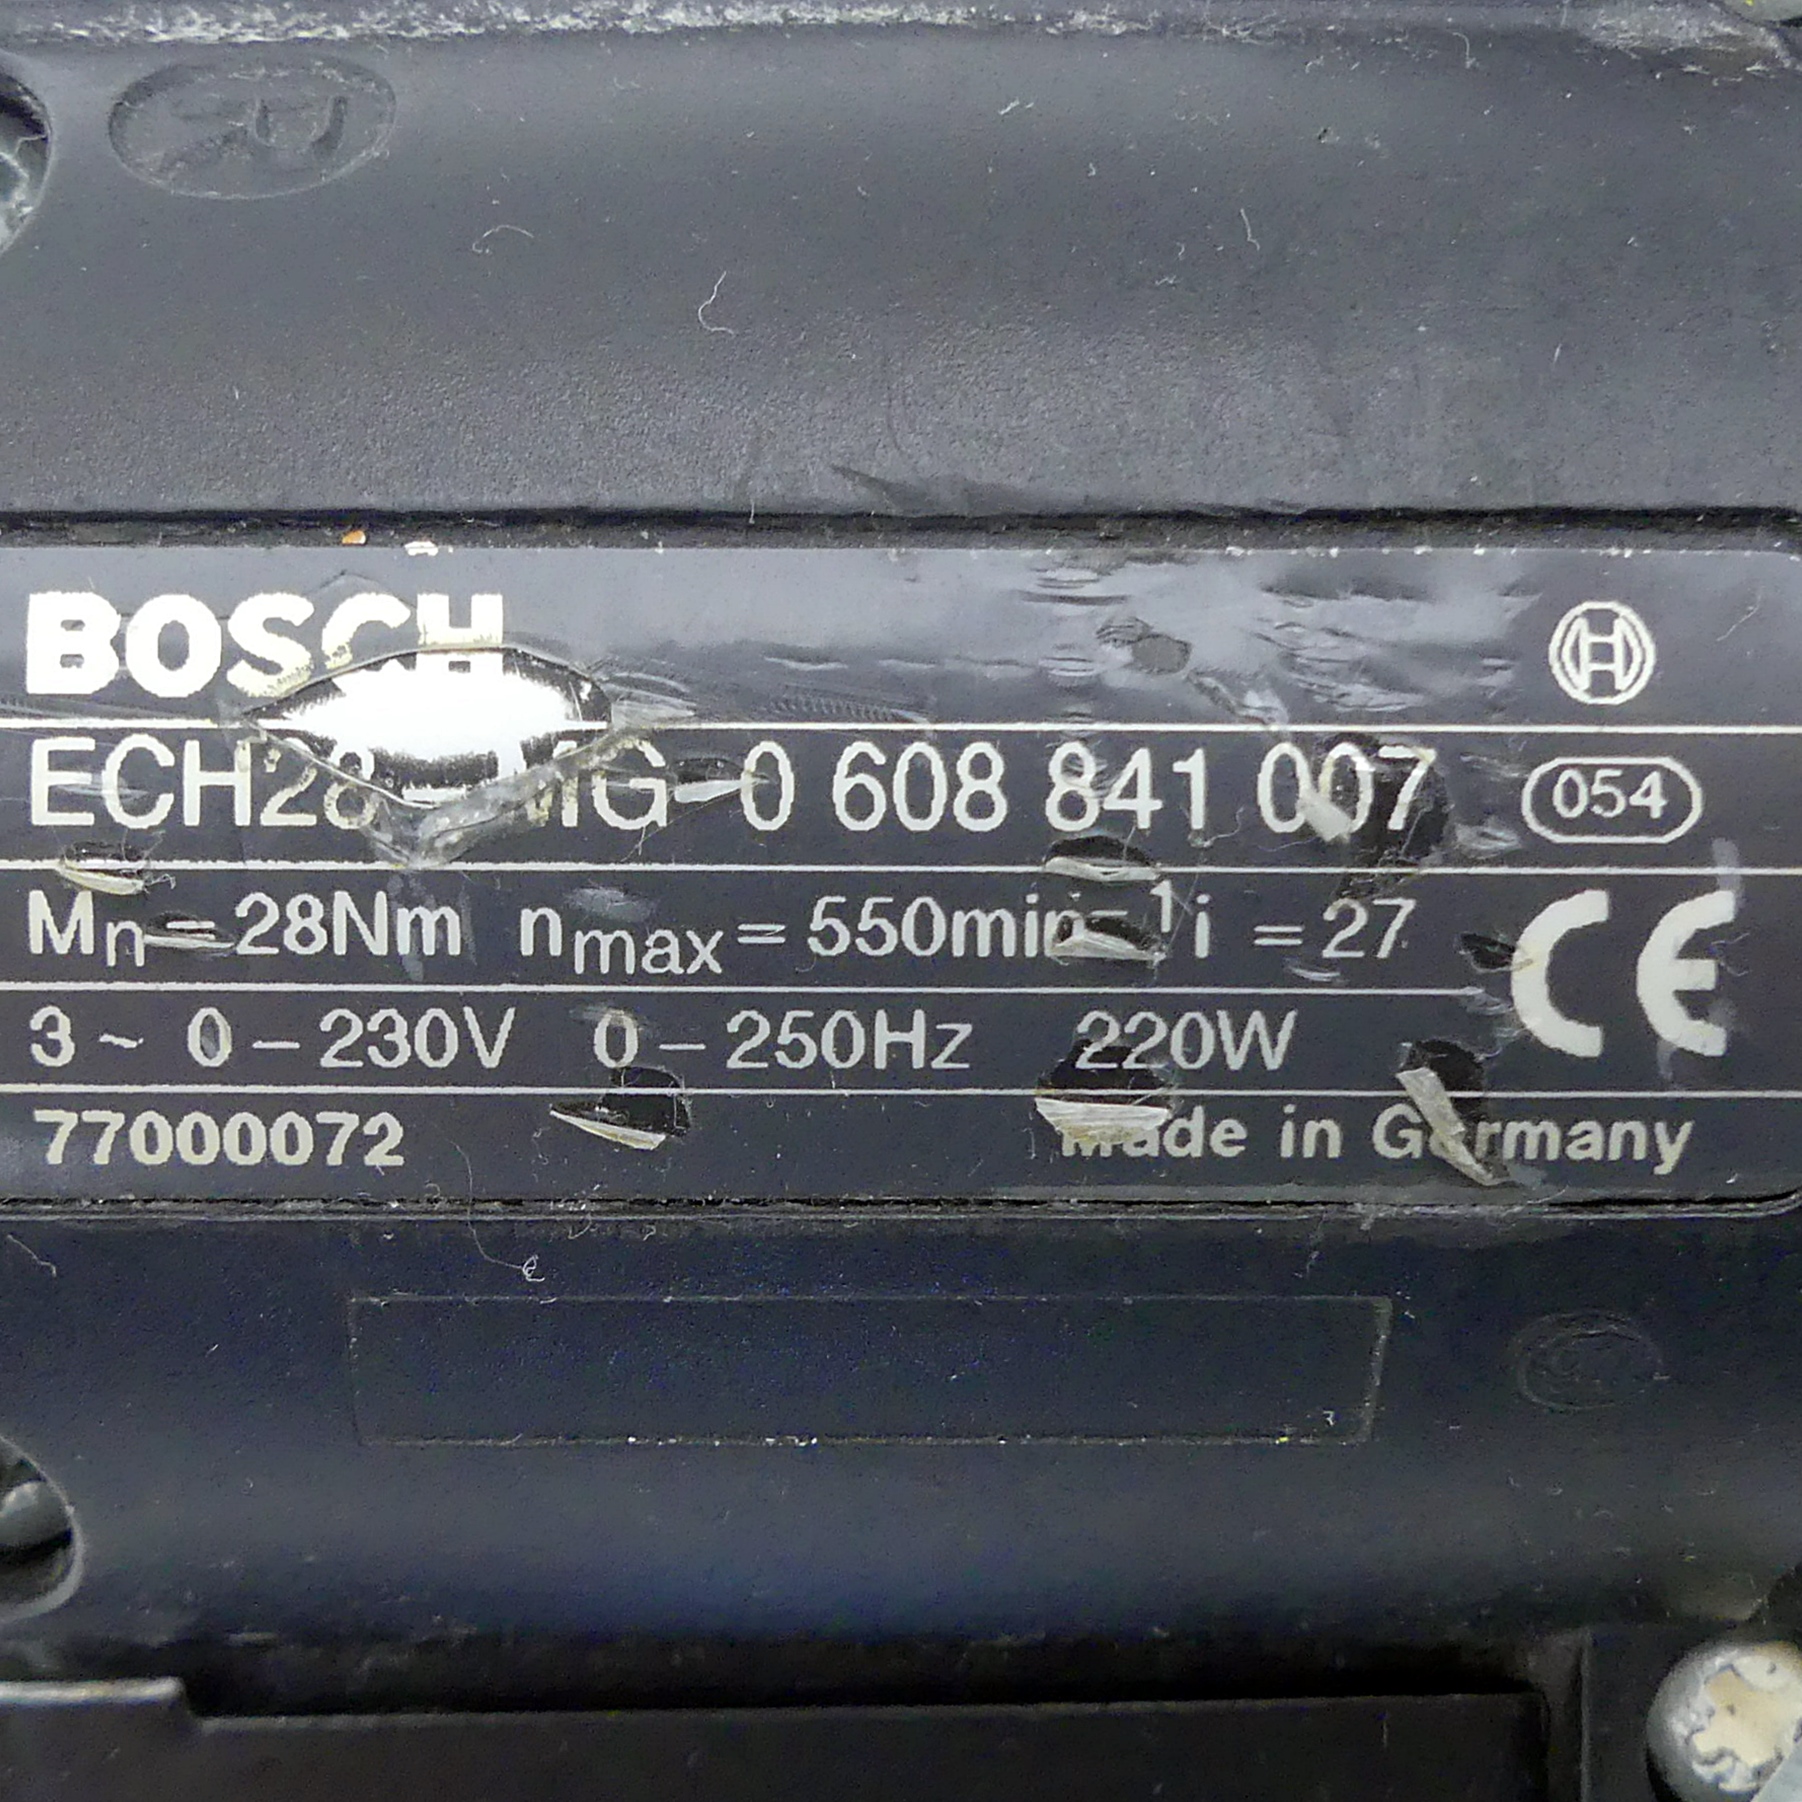 Handschrauber ECH20-MG 0 608 841 007 